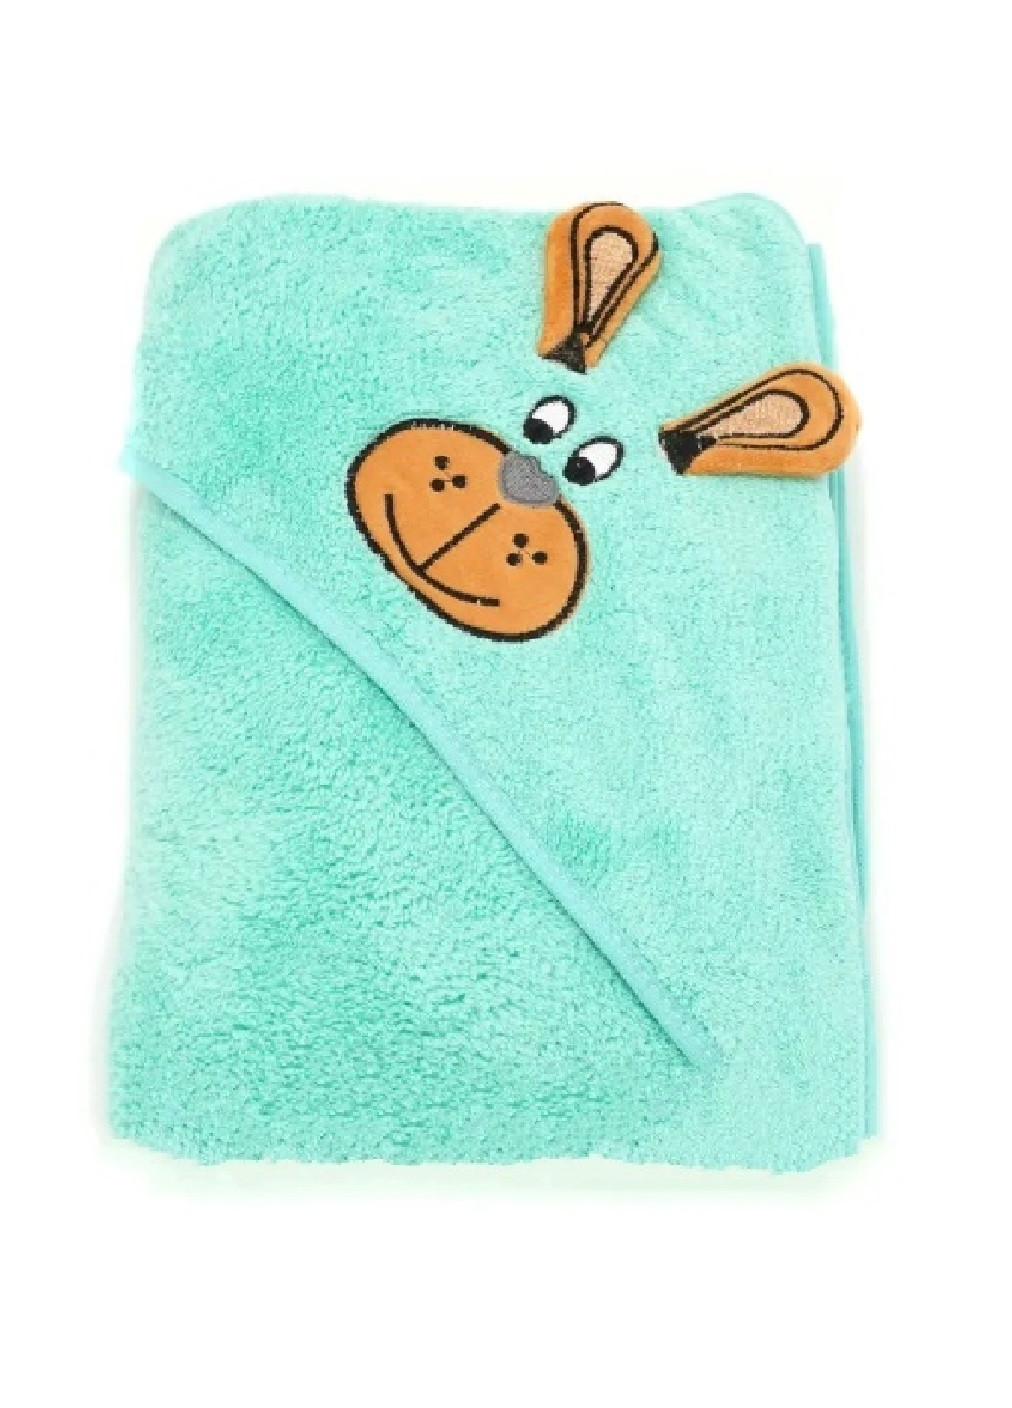 Unbranded полотенце с капюшоном пончо детское банное плед уголок конверт для купания 90х90 см (473224-prob) бирюзовый однотонный бирюзовый производство -